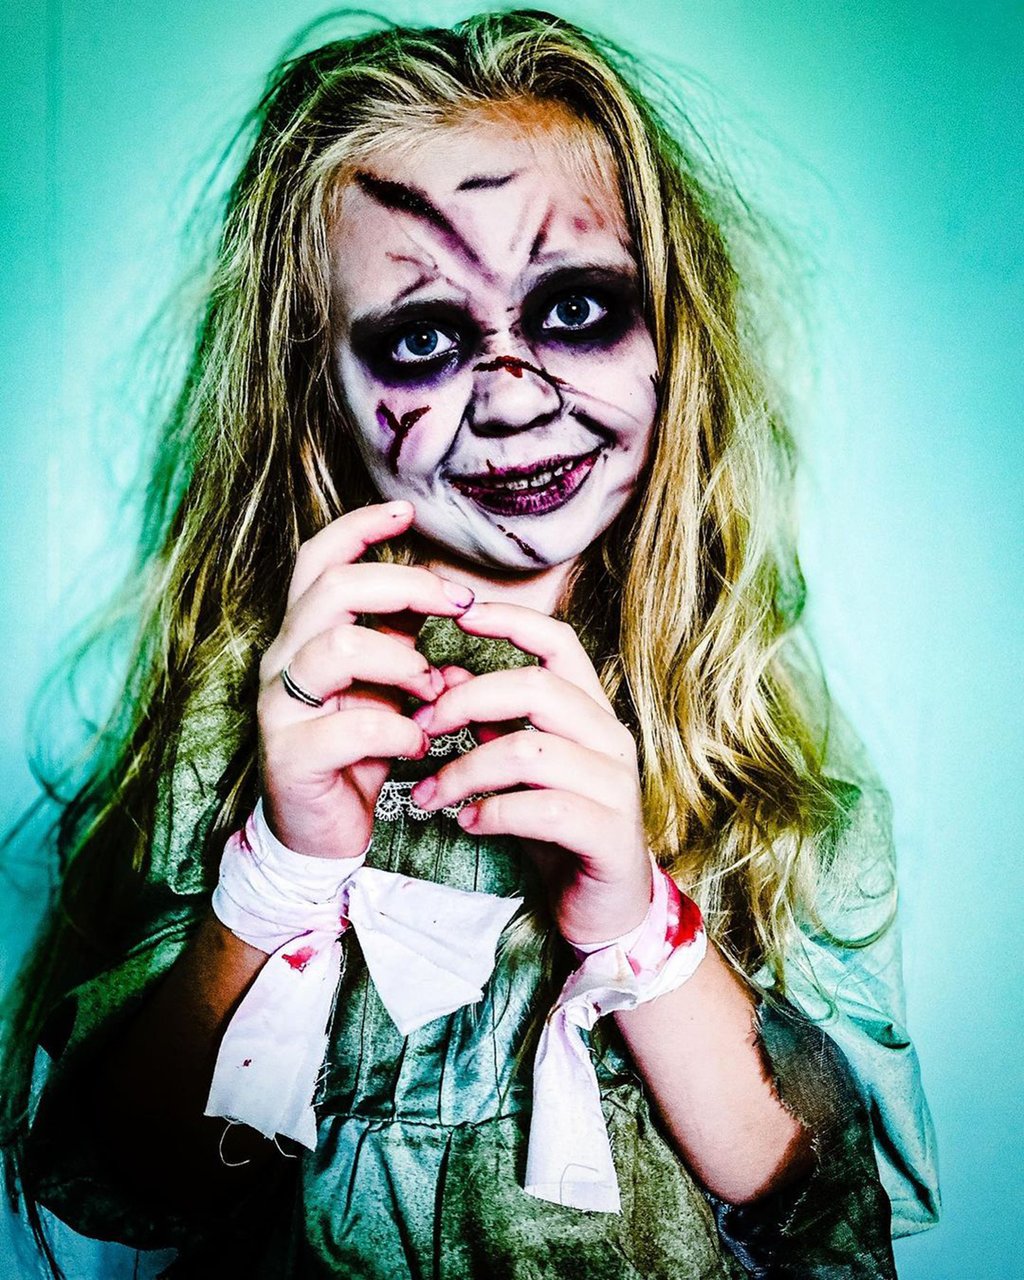 À seulement 8 ans, elle recrée des scènes de films d’horreur sur son compte Instagram